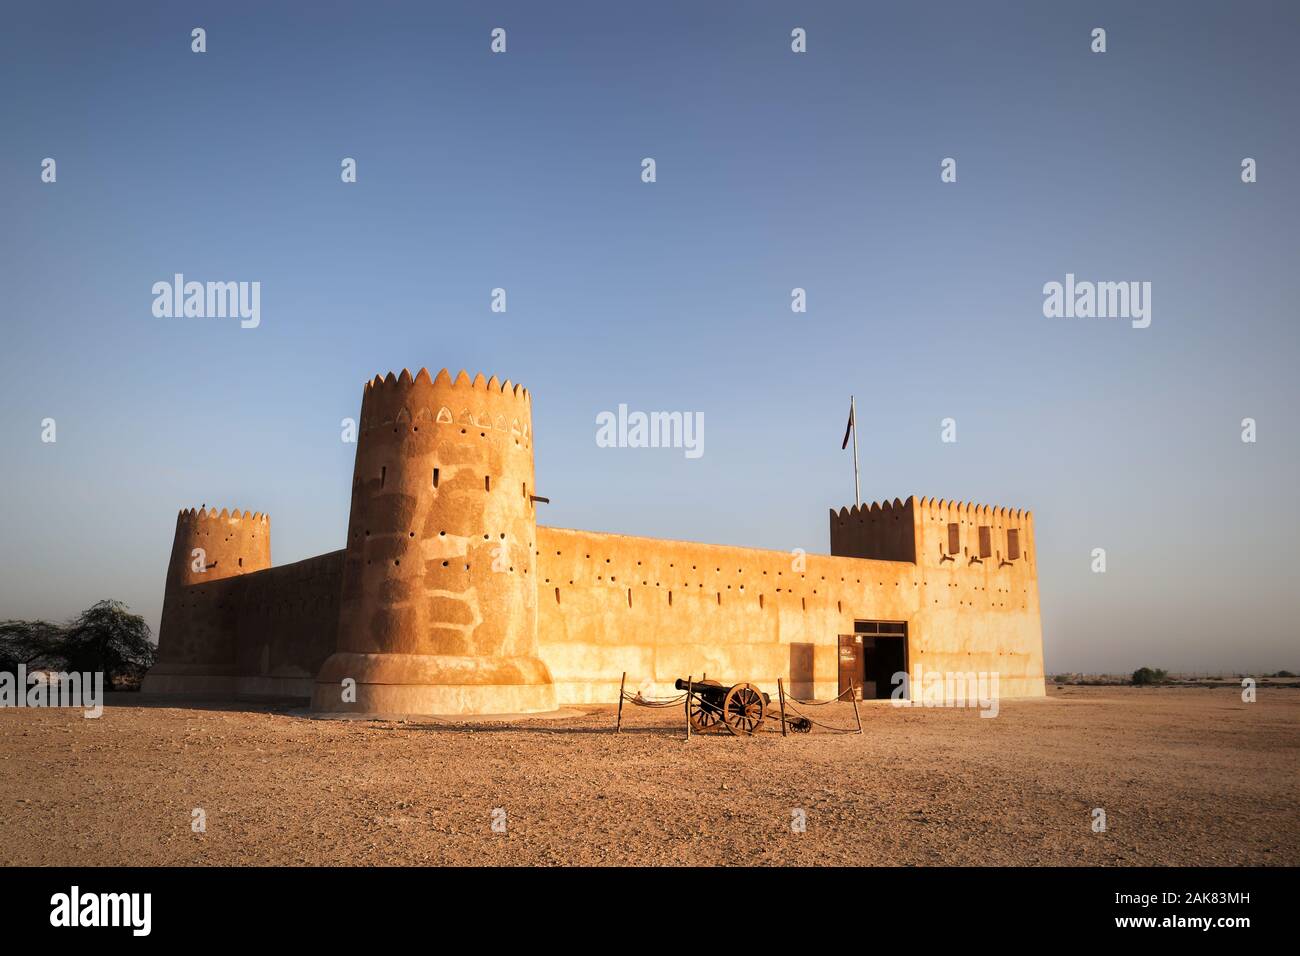 Al Zubara Fort ist eine historische Militärfestung von Qatari, die im Jahr 1928 erbaut wurde. Es ist eine der wichtigsten Touristenattraktionen in Katar. Stockfoto